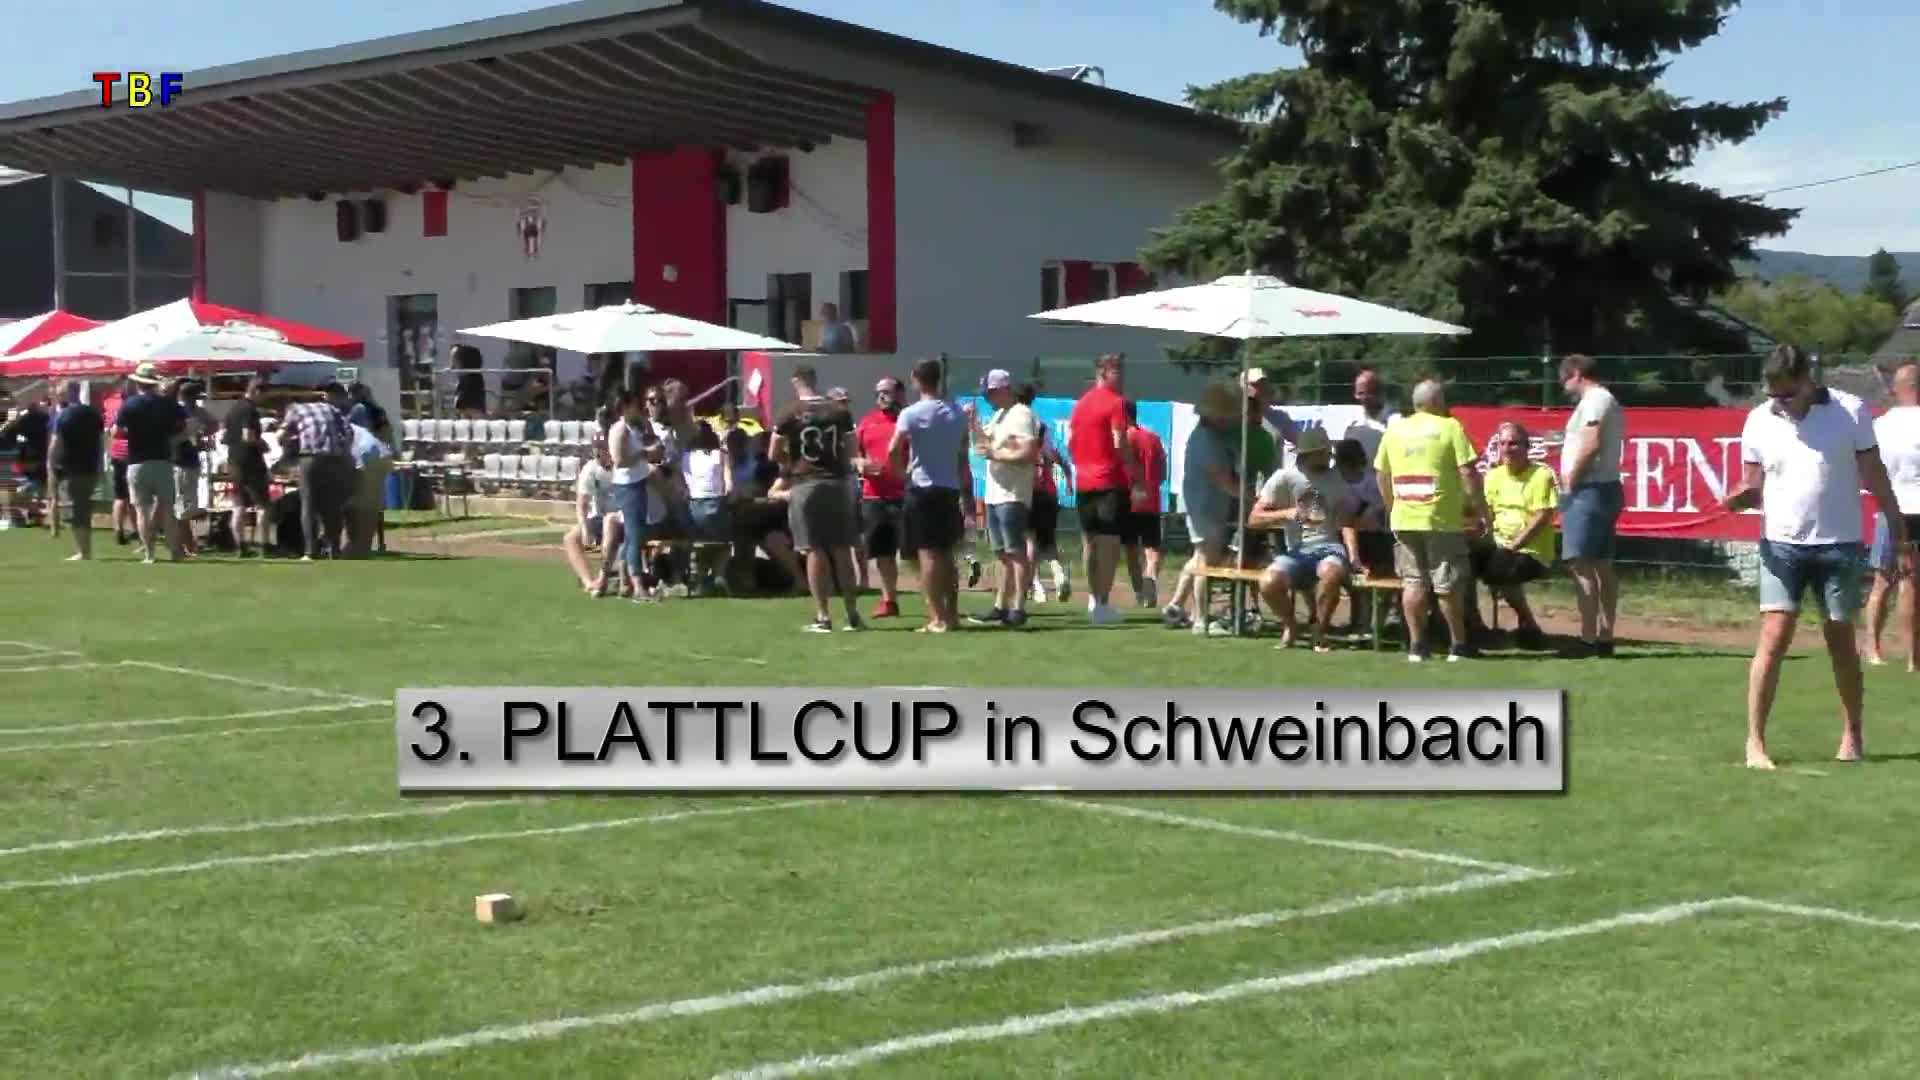 3. PLATTLCUP in Schweinbach